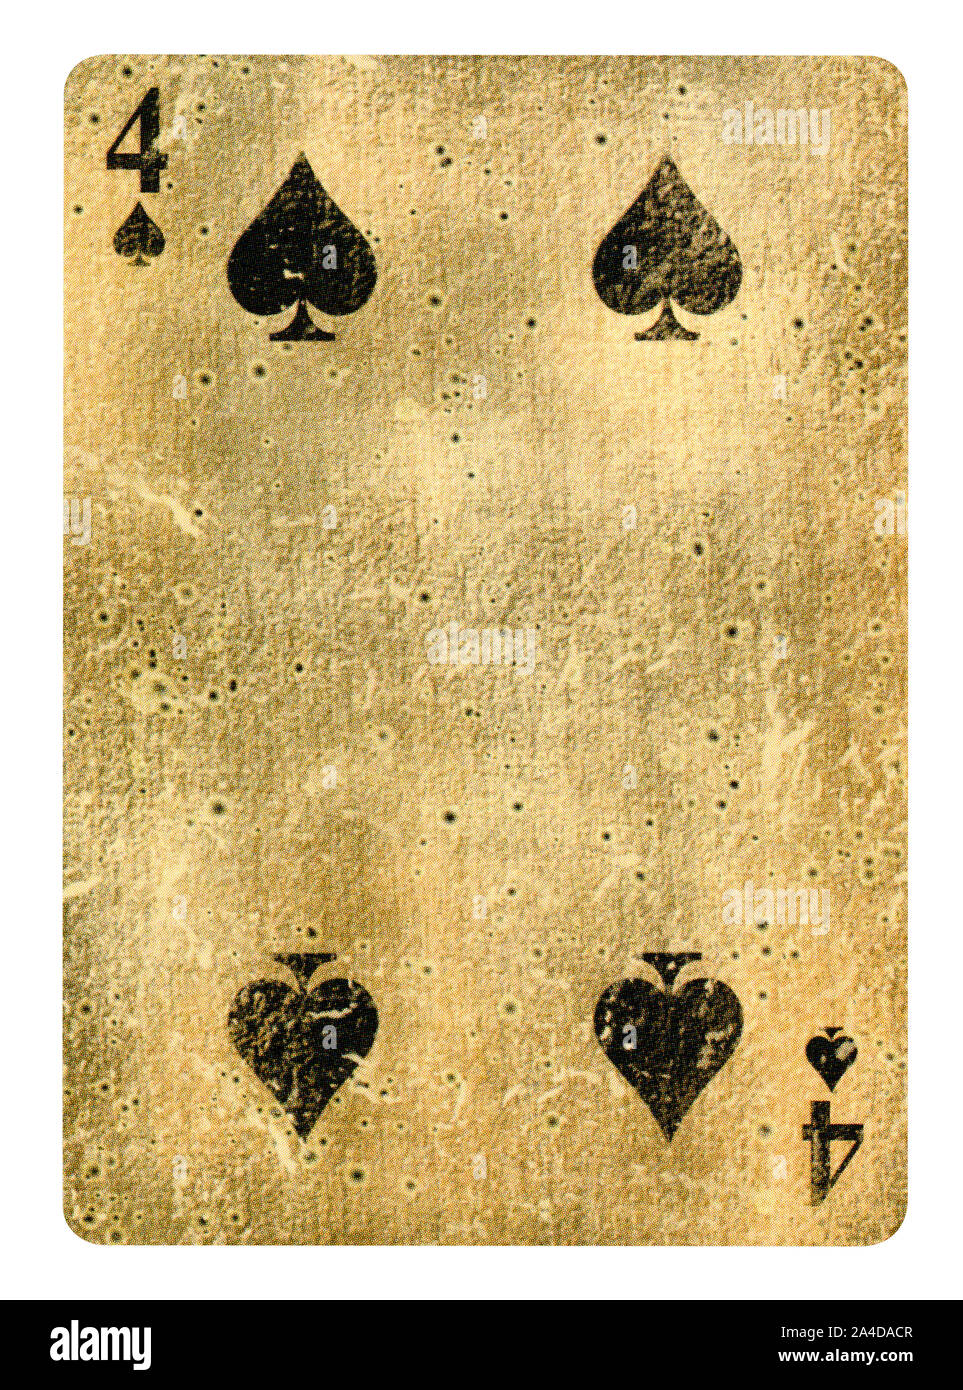 Quatre de pique jeu de carte - isolated on white Banque D'Images